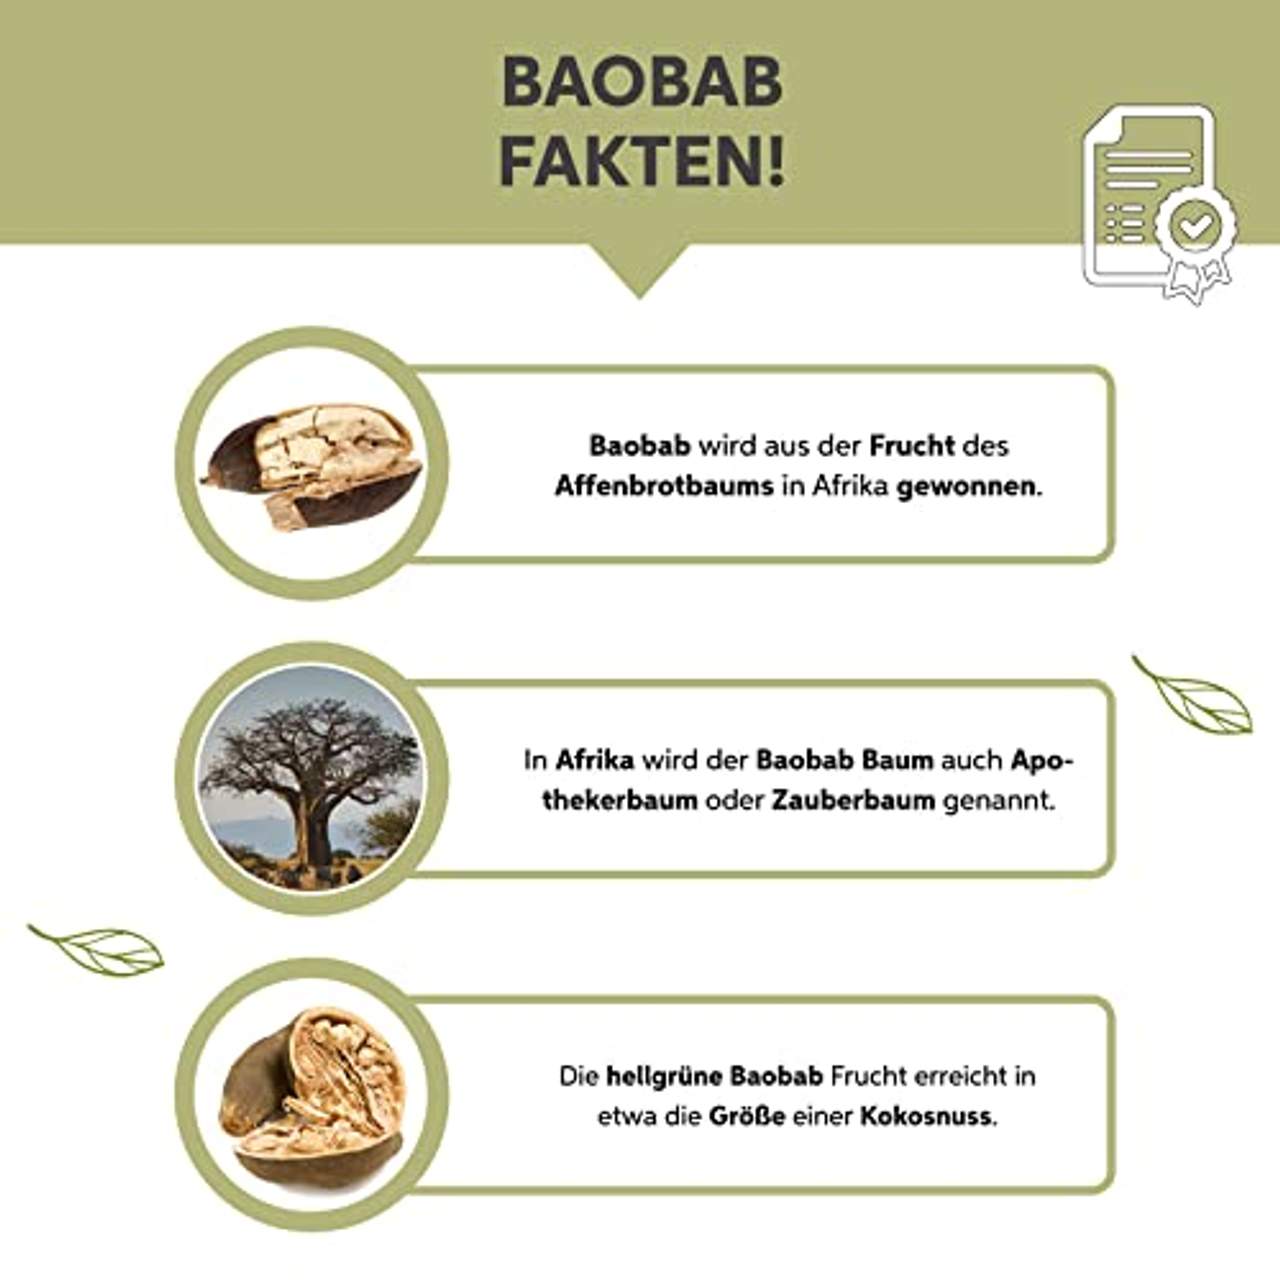 eltabia Bio Baobab-Pulver 1kg